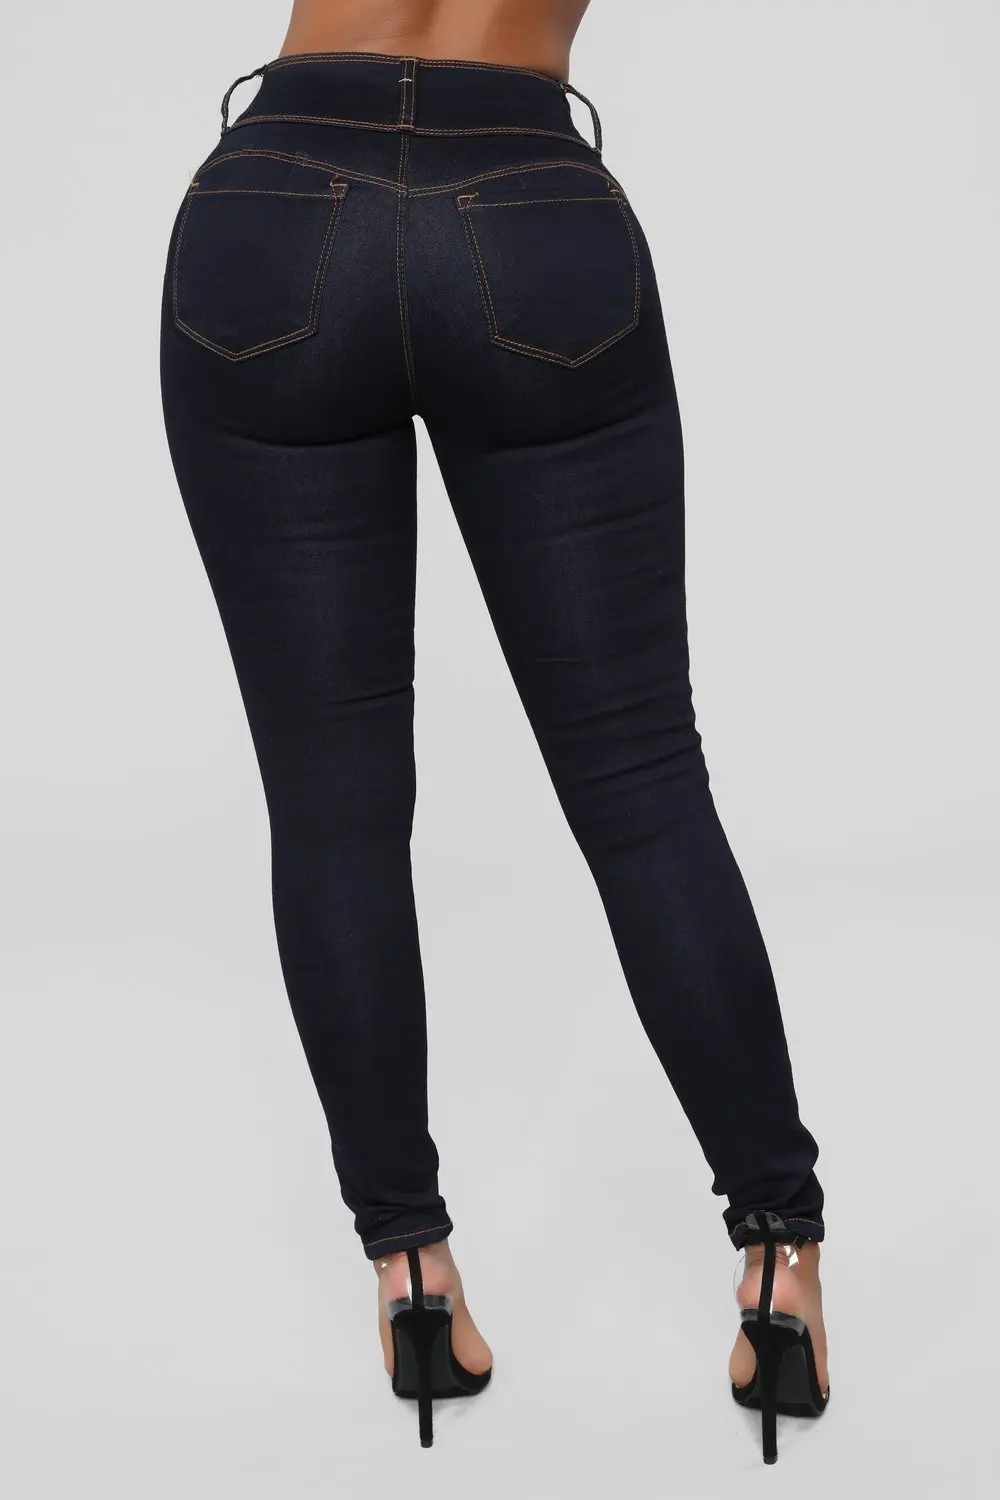 Джинсы женские с высокой талией стрейч летние модные длинные брюки обтягивающие тонкие джинсовые брюки для женщин черный синий